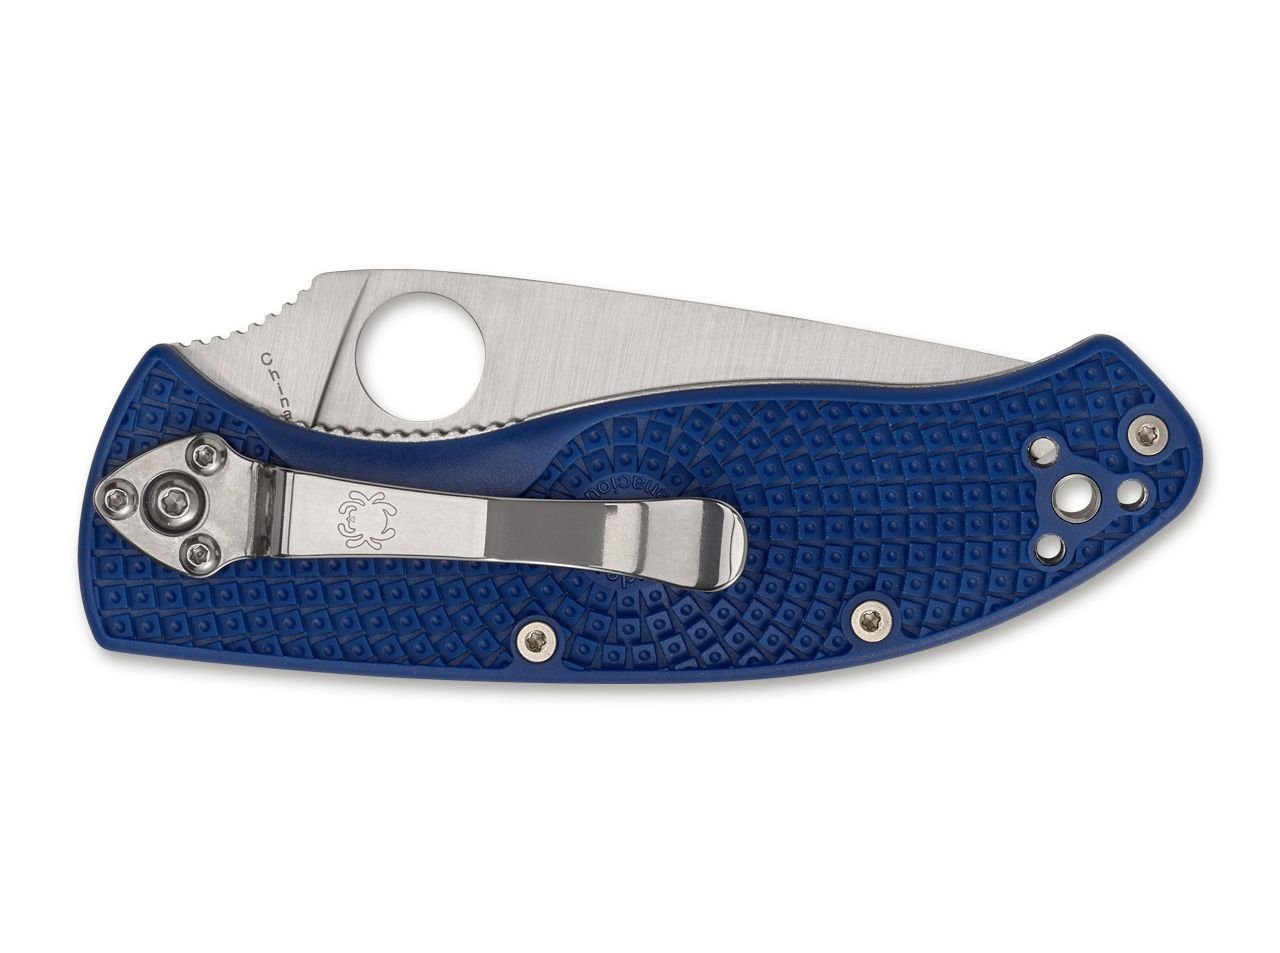 Taschenmesser Liner, EDC Einhandmesser Tenacious Spyderco Blue rostfrei C122PBL